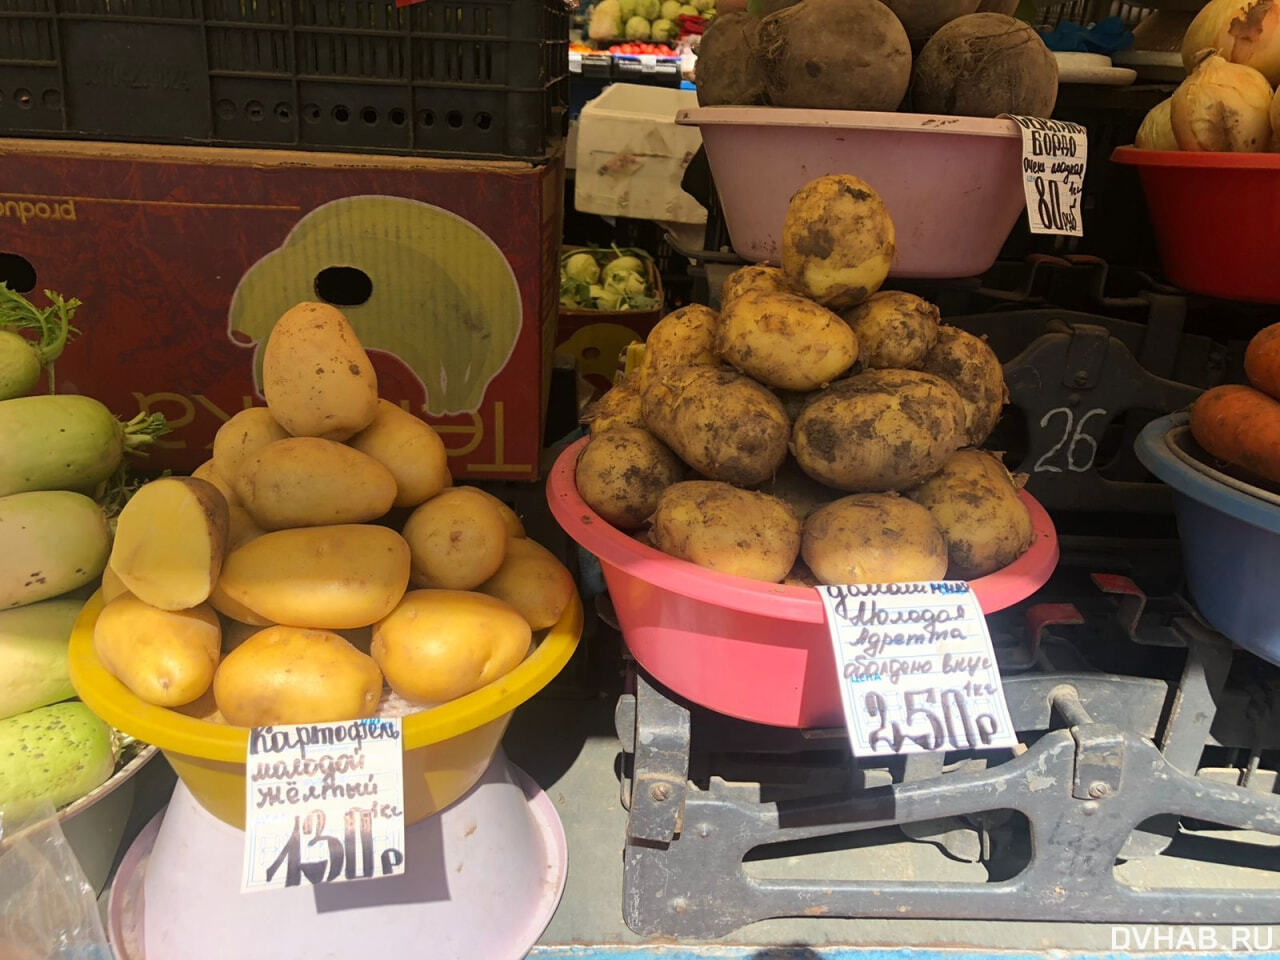 Килограмм картошки стоит 40 рублей. Картошка на рынке. На рынке. Килограмм картошки. Центральный рынок.